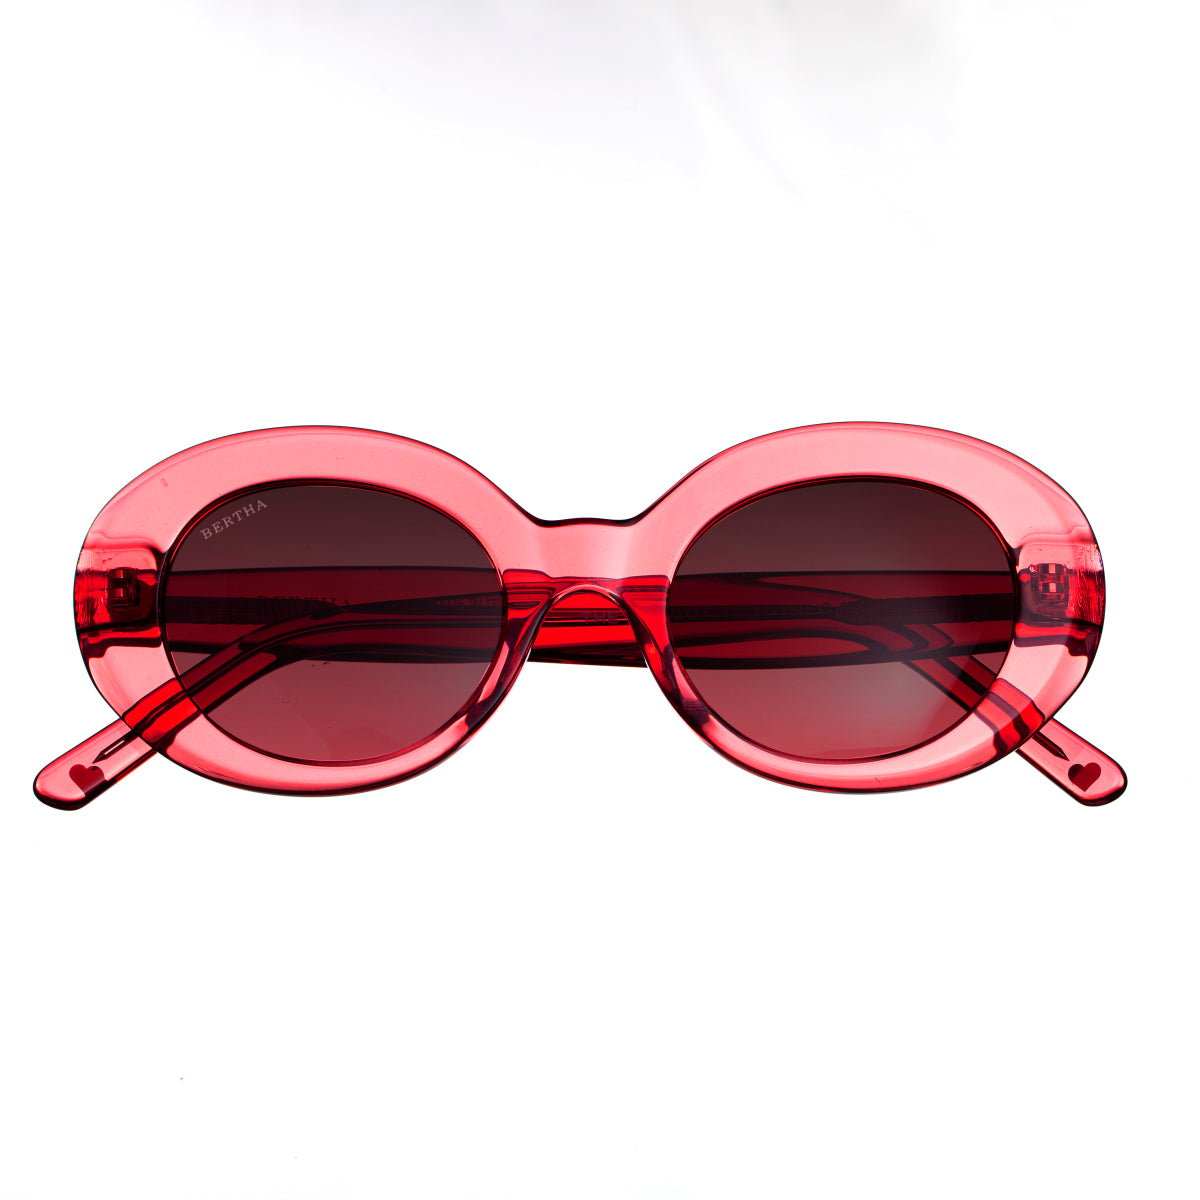 Bertha Margot Handmade in Italy Sunglasses - Red - BRSIT102-3